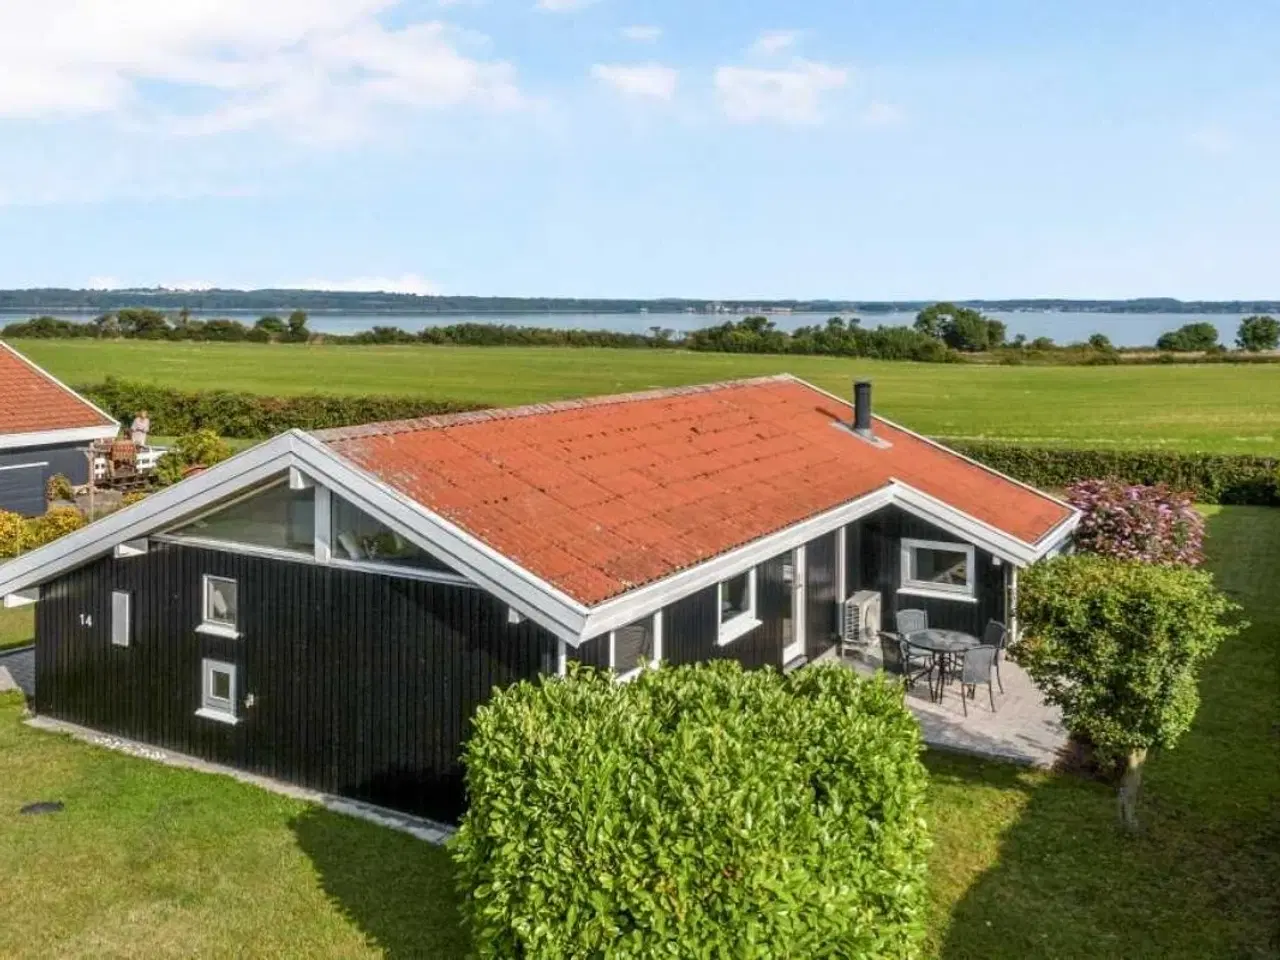 Billede 1 - Sommerhus på Tåsinge med skøn panoramaudsigt over vandet.